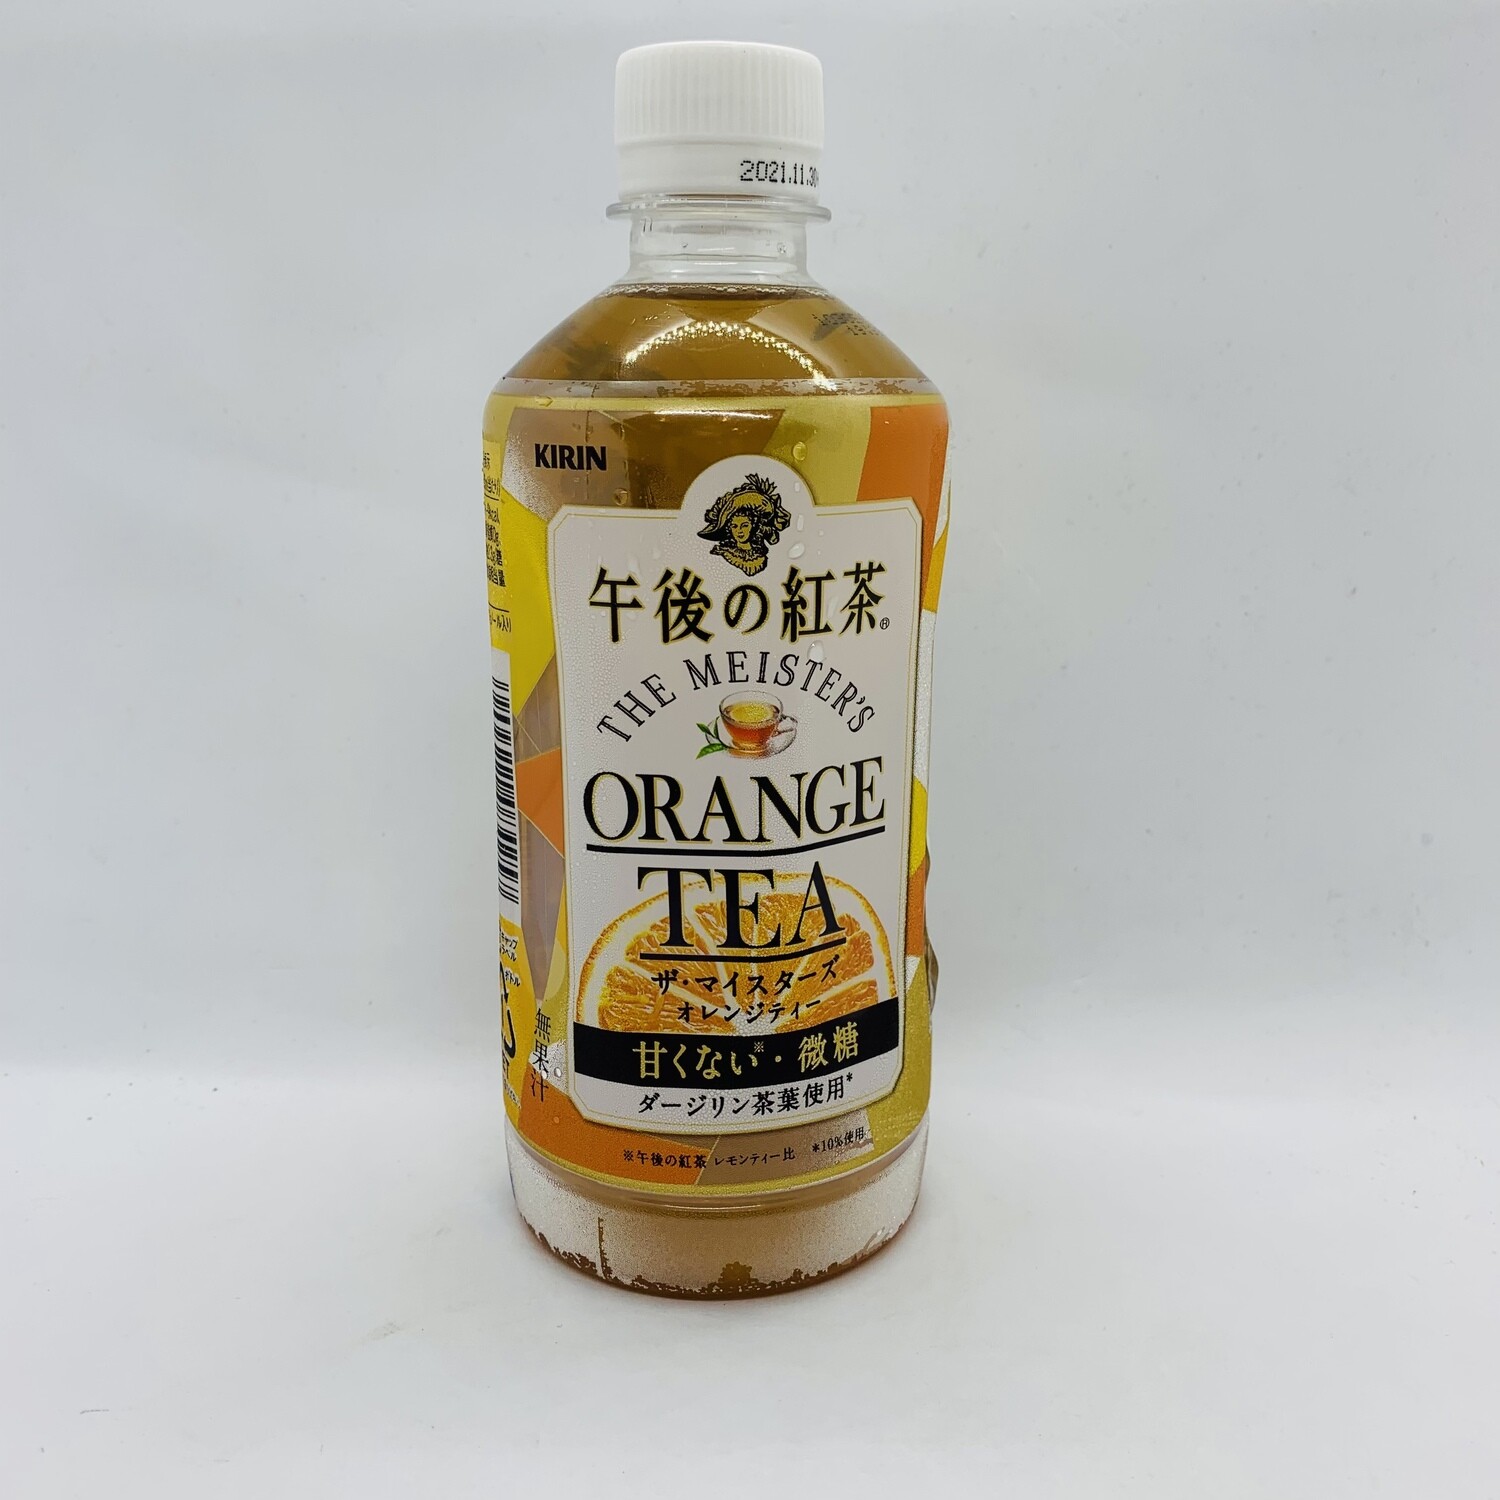 Gogonokocha Orange Tea